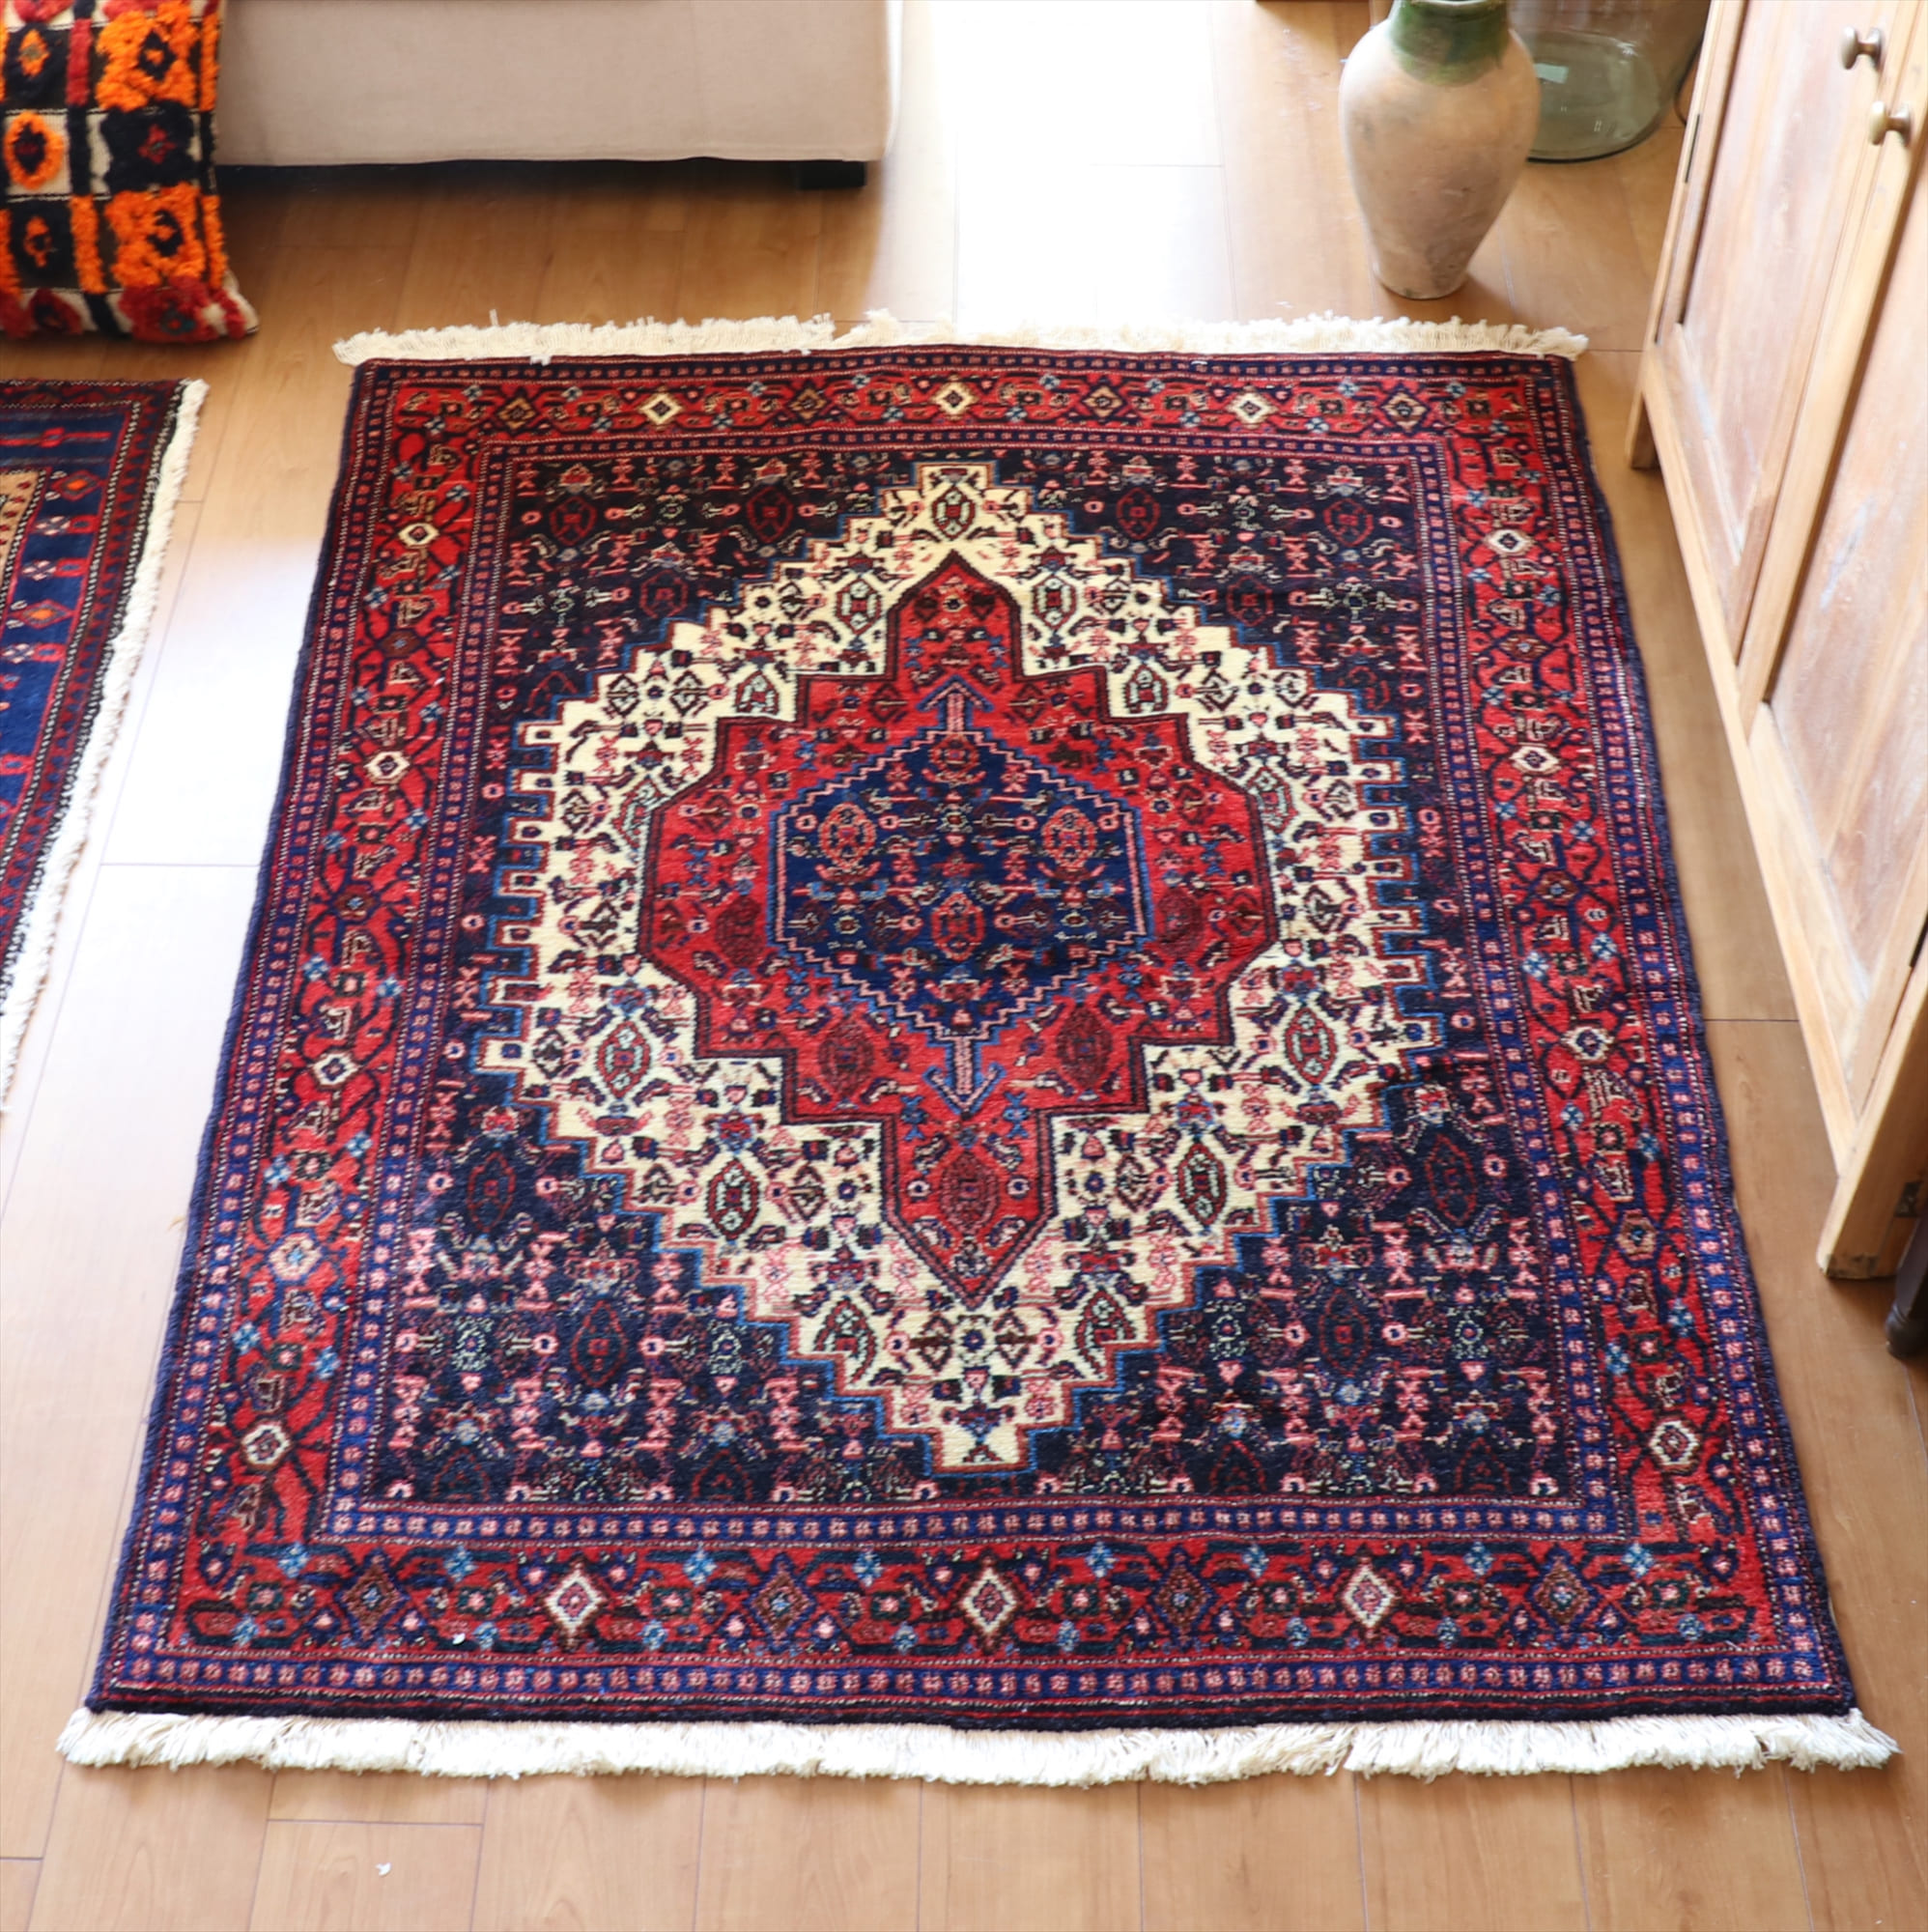 トライバルラグ・イランの絨毯/リビングサイズ・セッヂャーデ サナンダージ/六角形のメダリオン・アラベスク模様